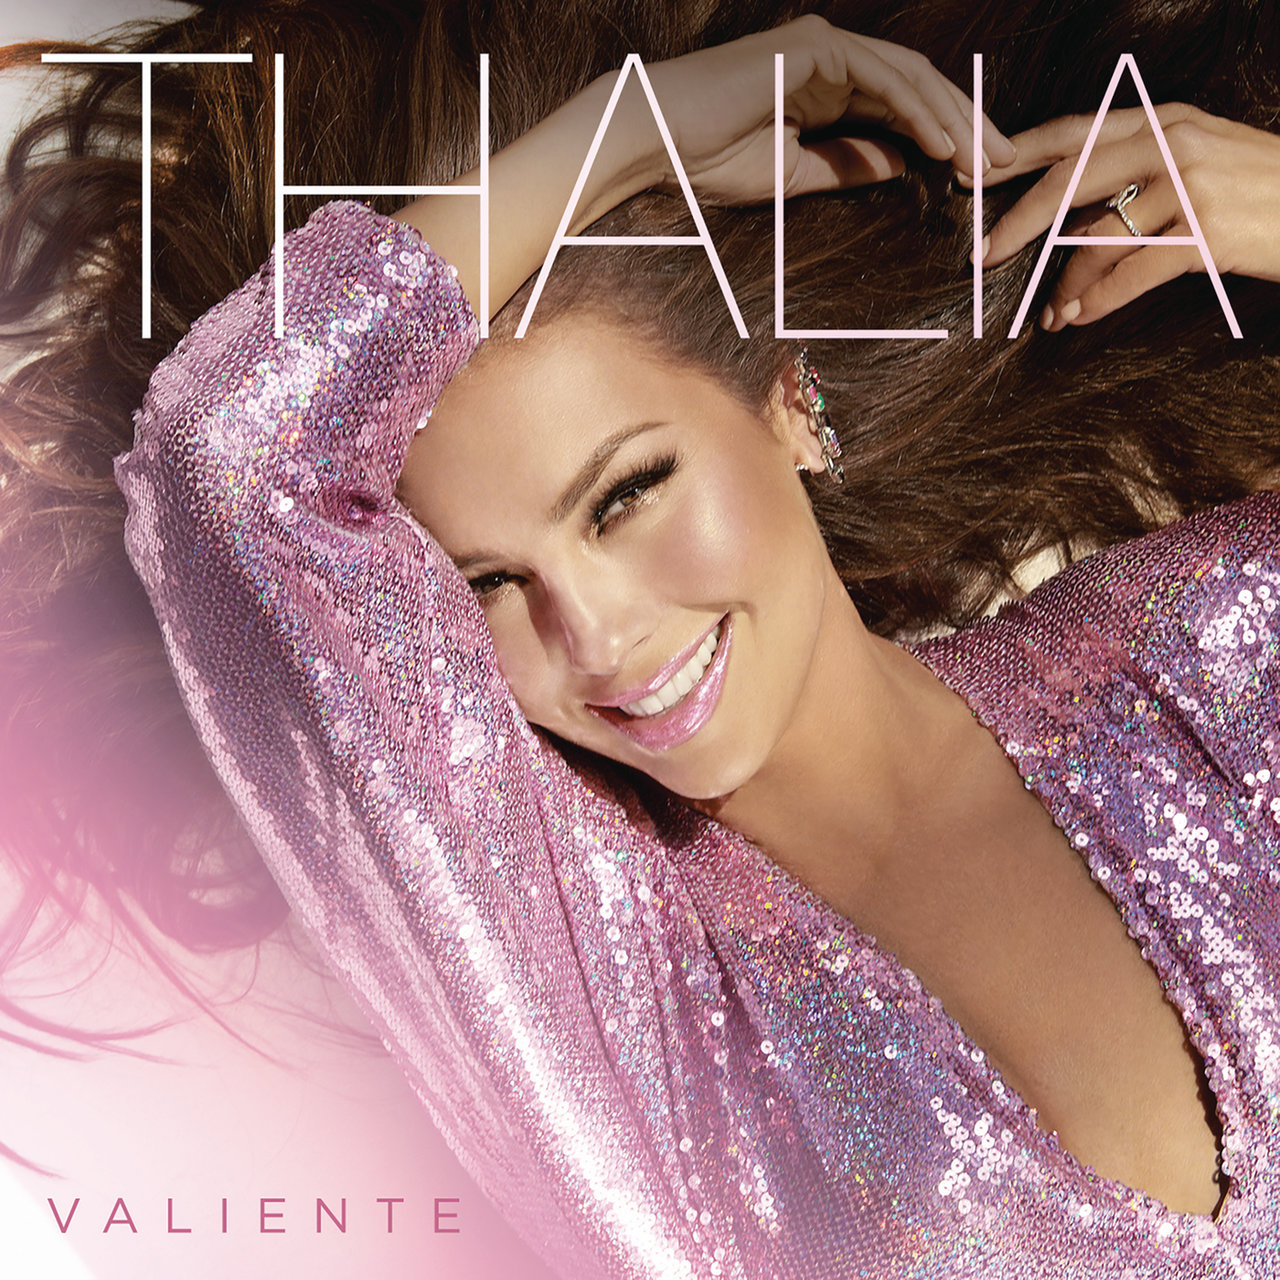 Thalía Valiente cover artwork